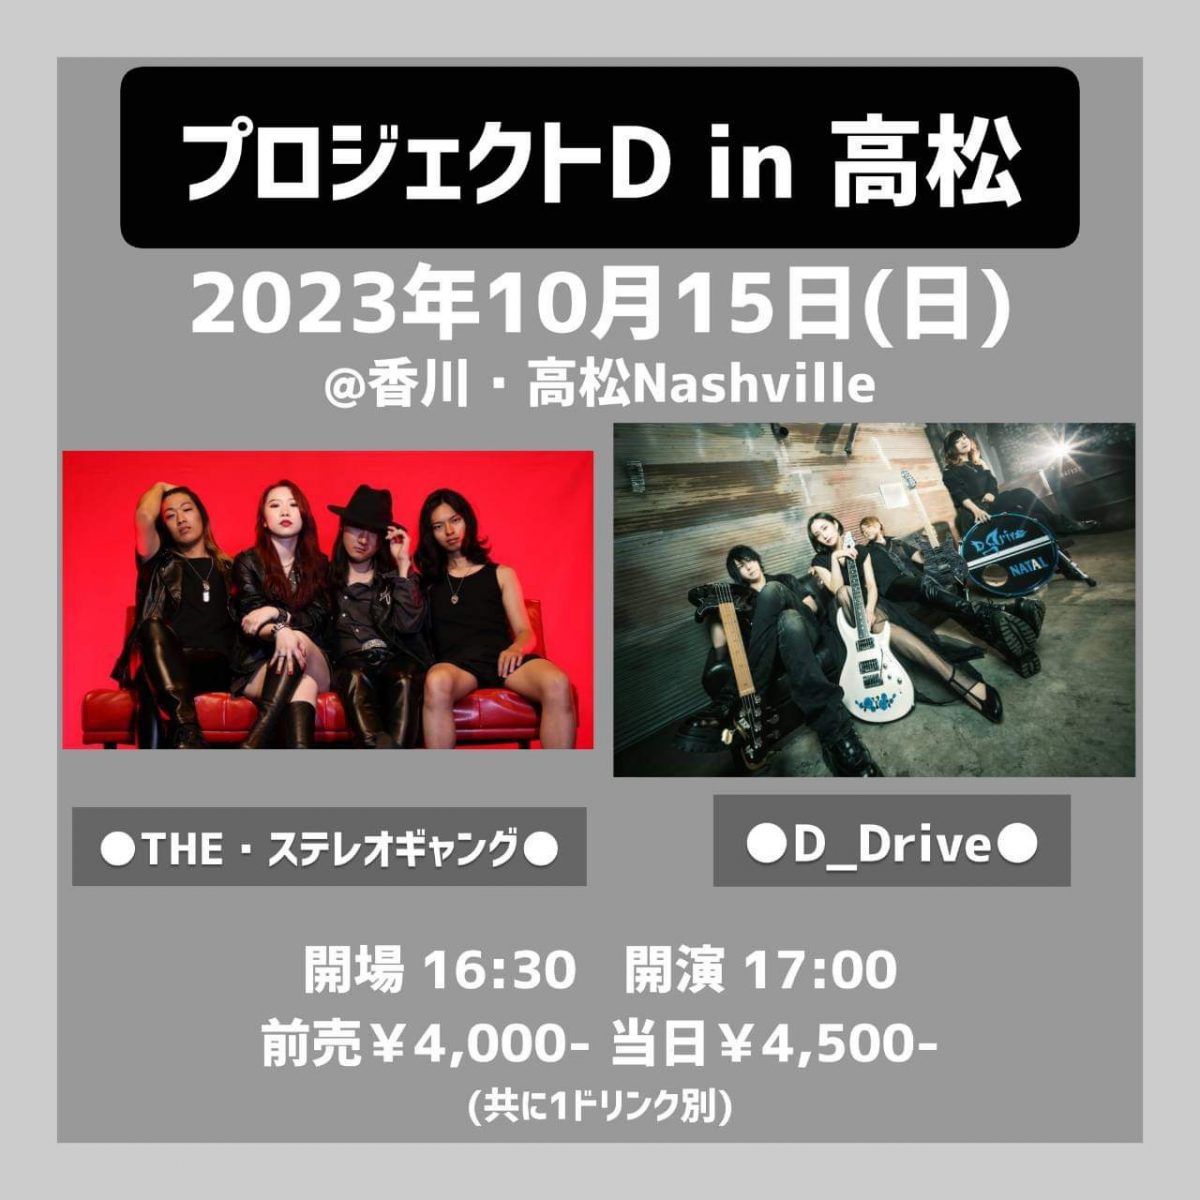 【プロジェクト D in 高松】D_Drive 高松公演